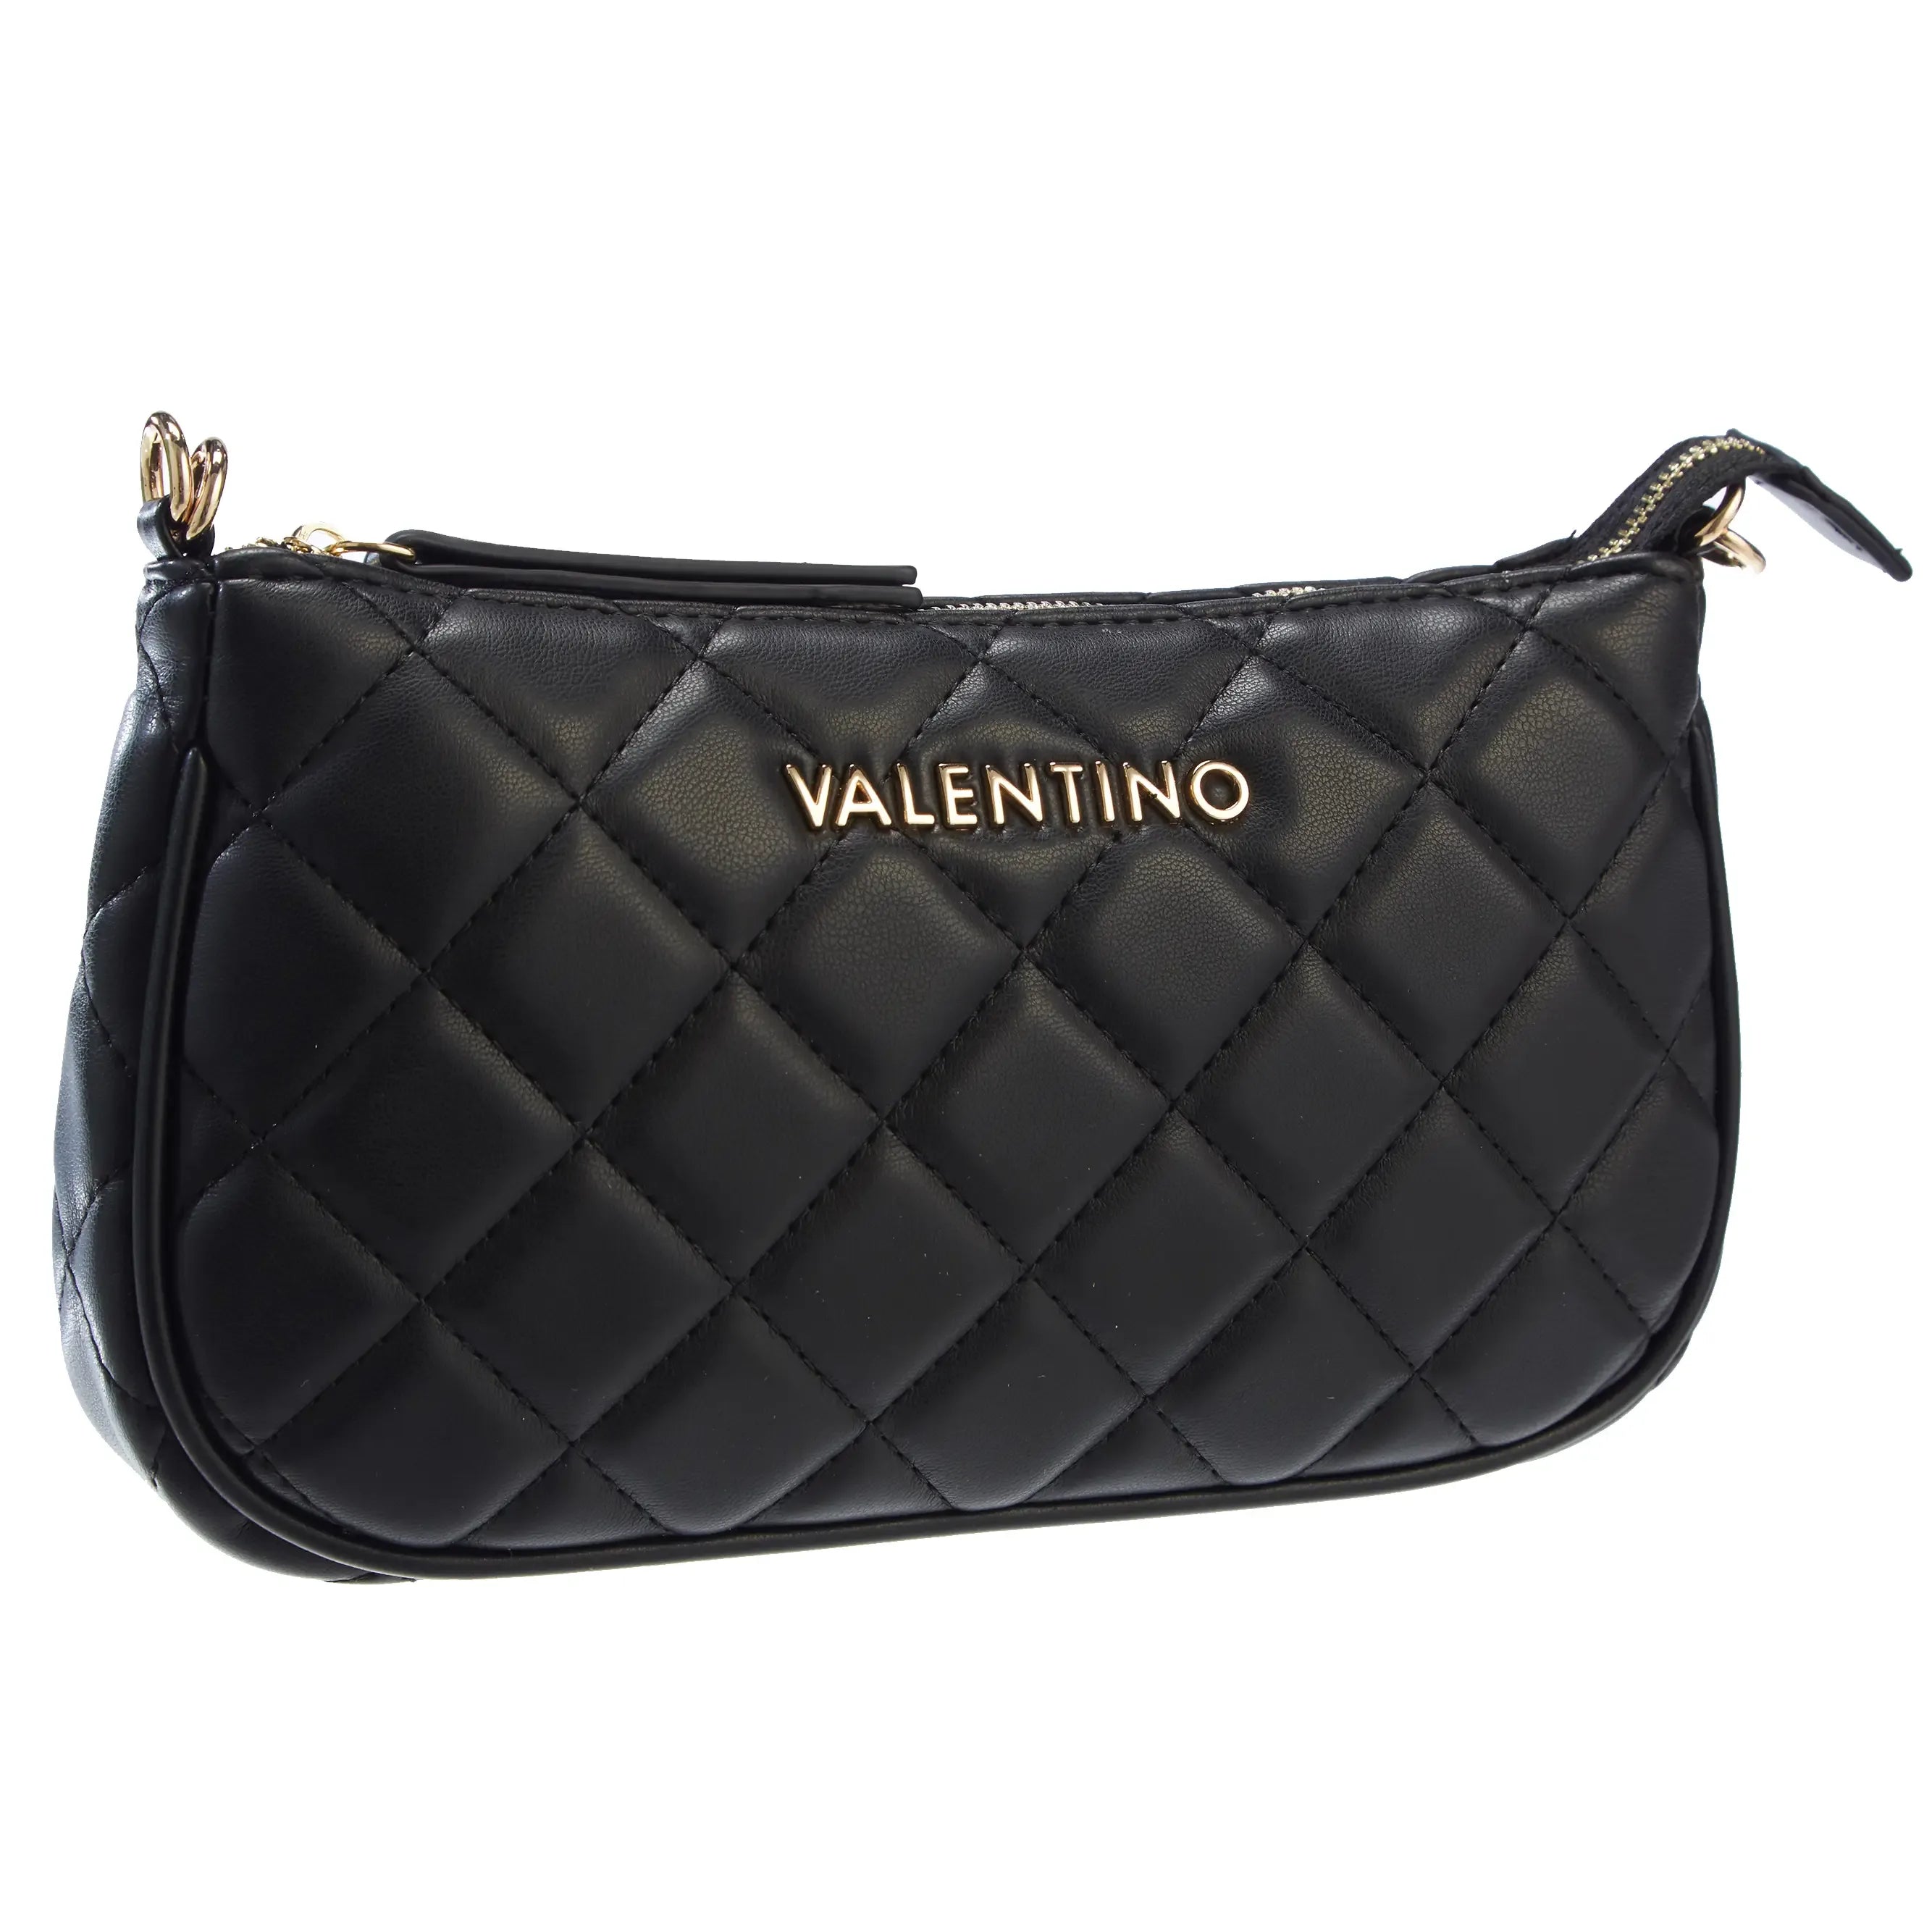 VLogo leather shoulder bag in pink - Valentino Garavani | Mytheresa